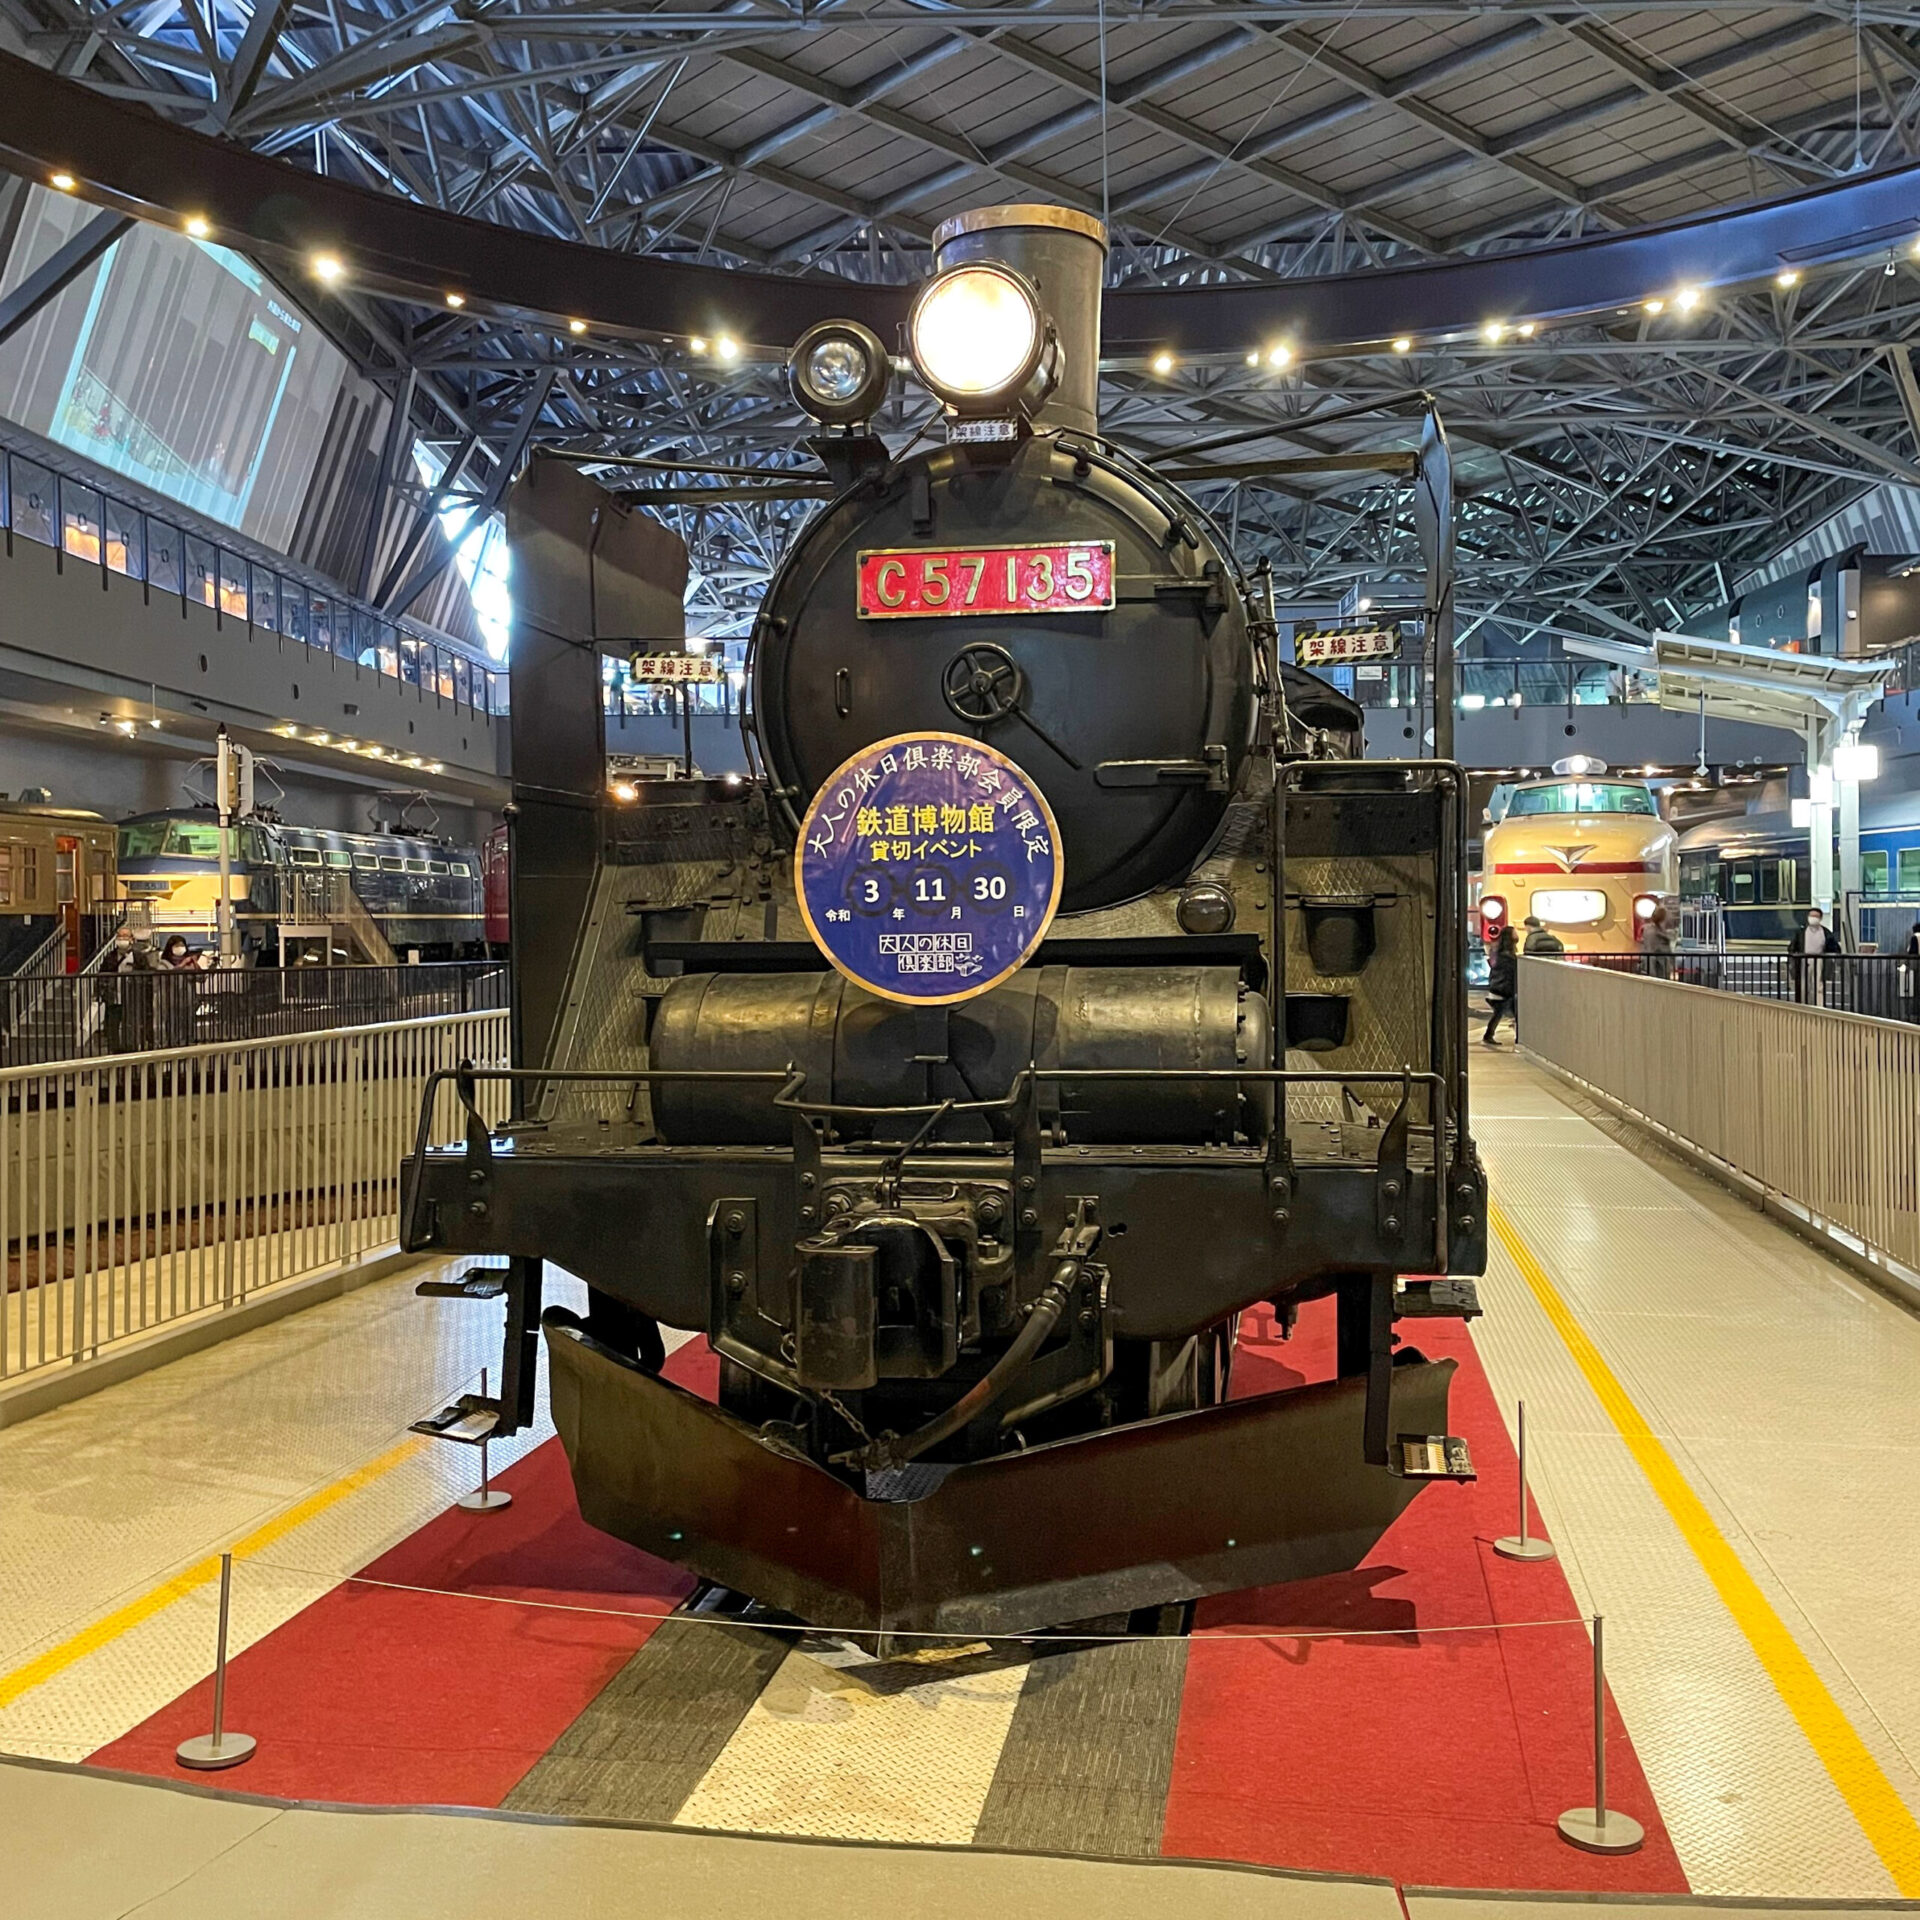 C57蒸気機関車鉄道博物館にて